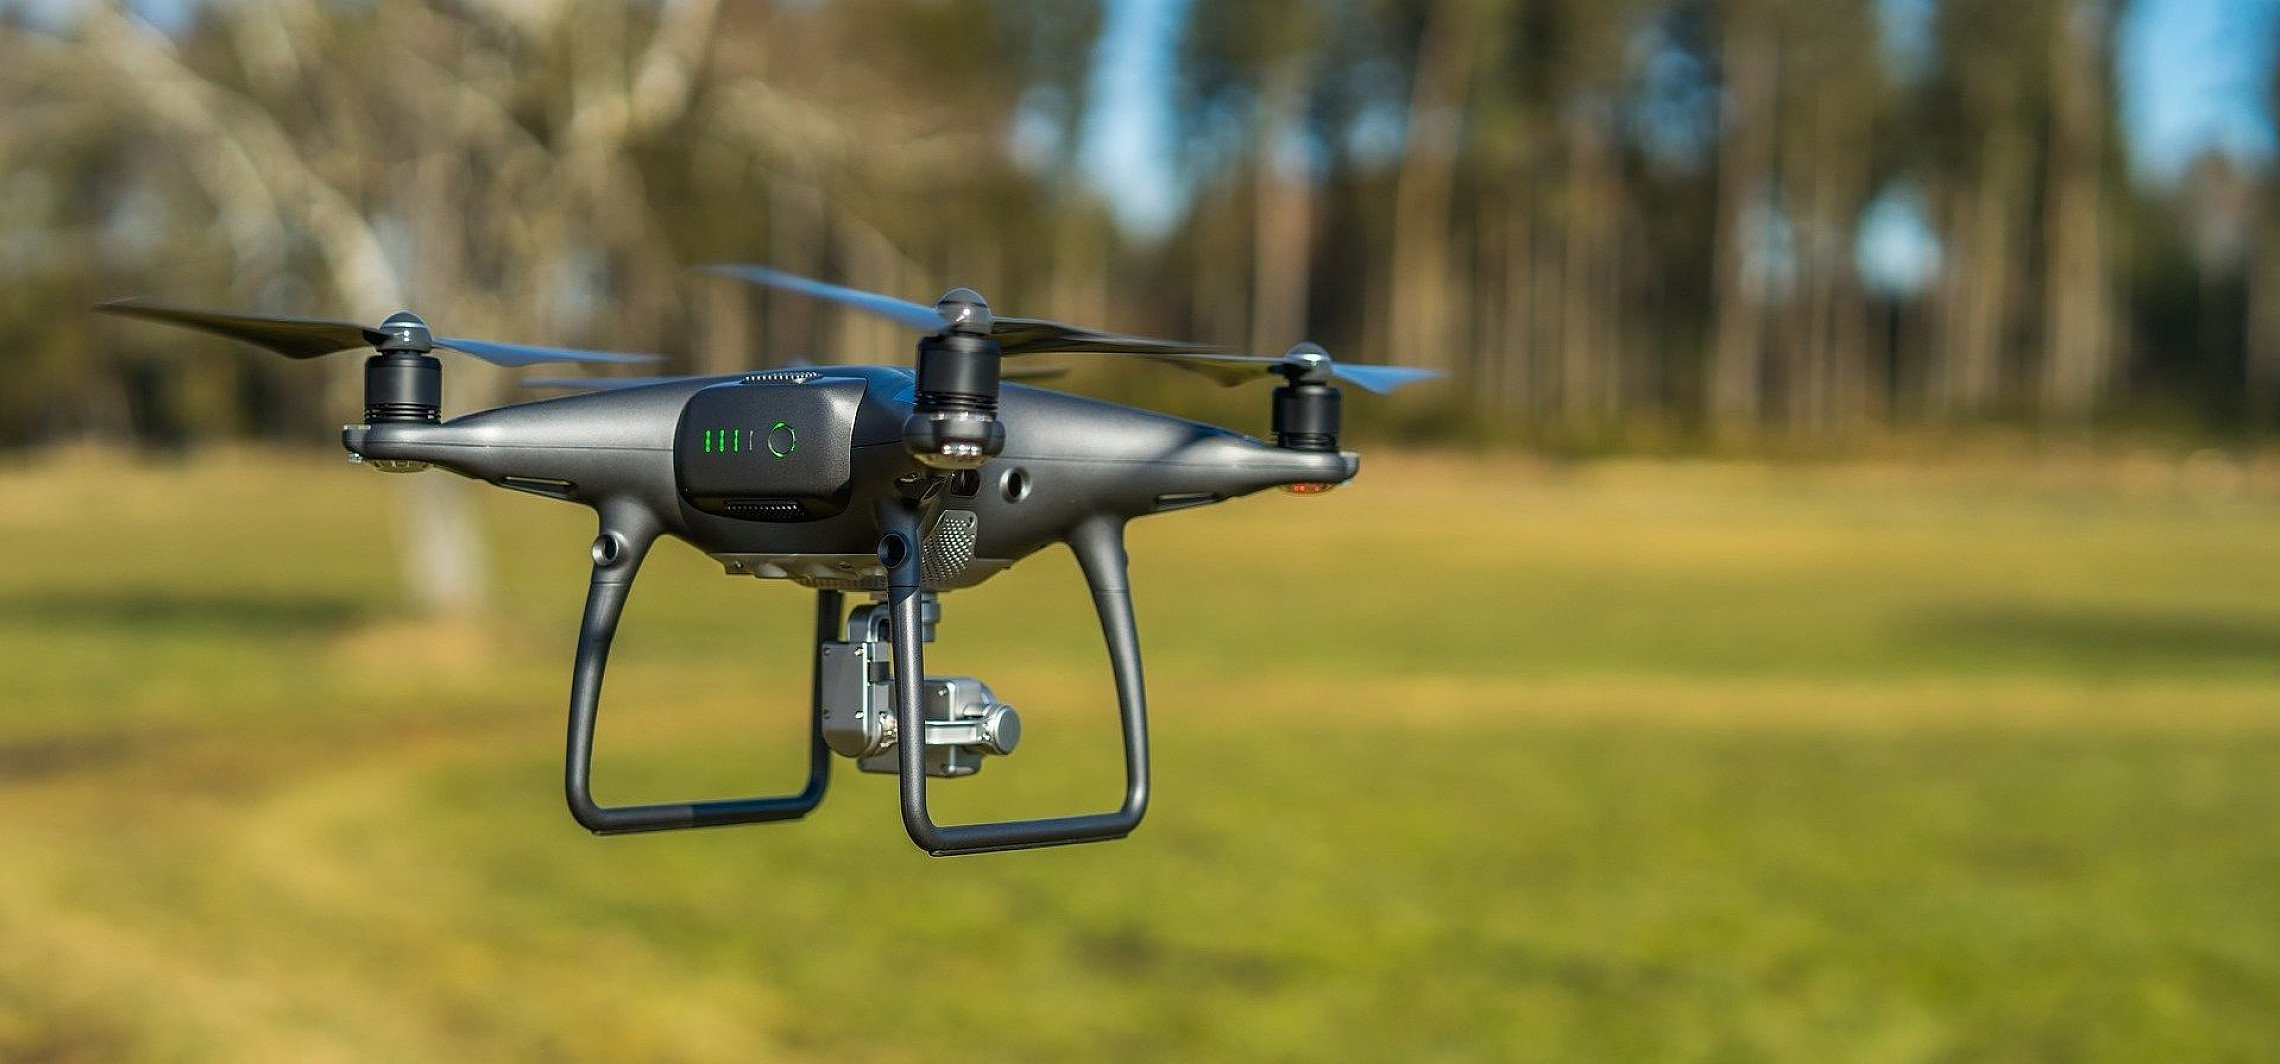 Mogilno - Pobił leśniczego, bo ten latał dronem